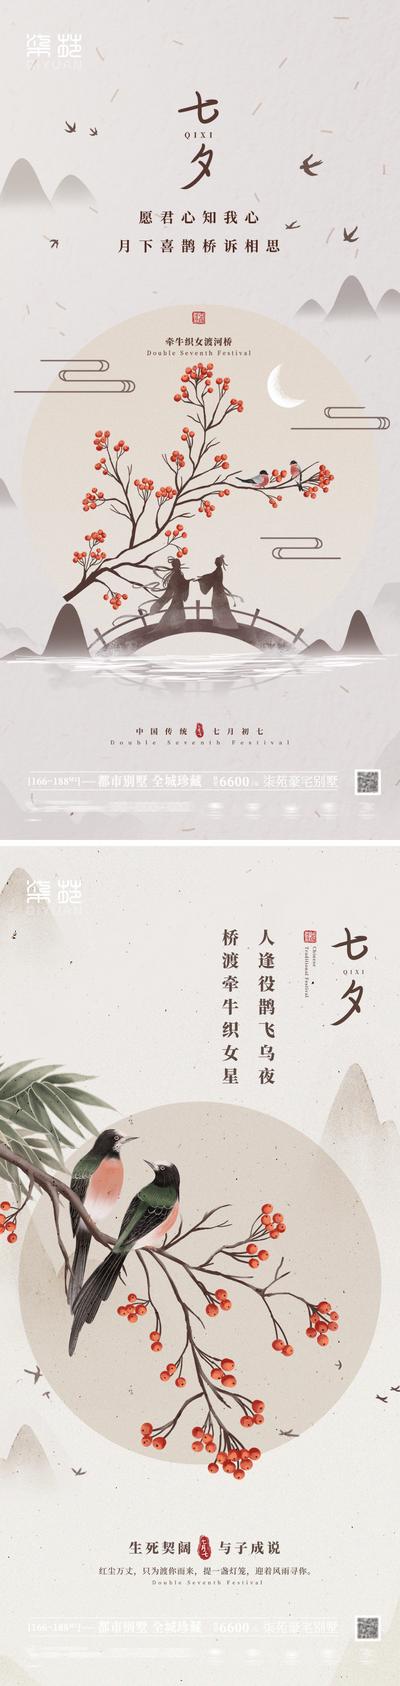 南门网 海报 地产 中国传统节日 七夕 情人节 牛郎织女 鹊桥 插画 系列